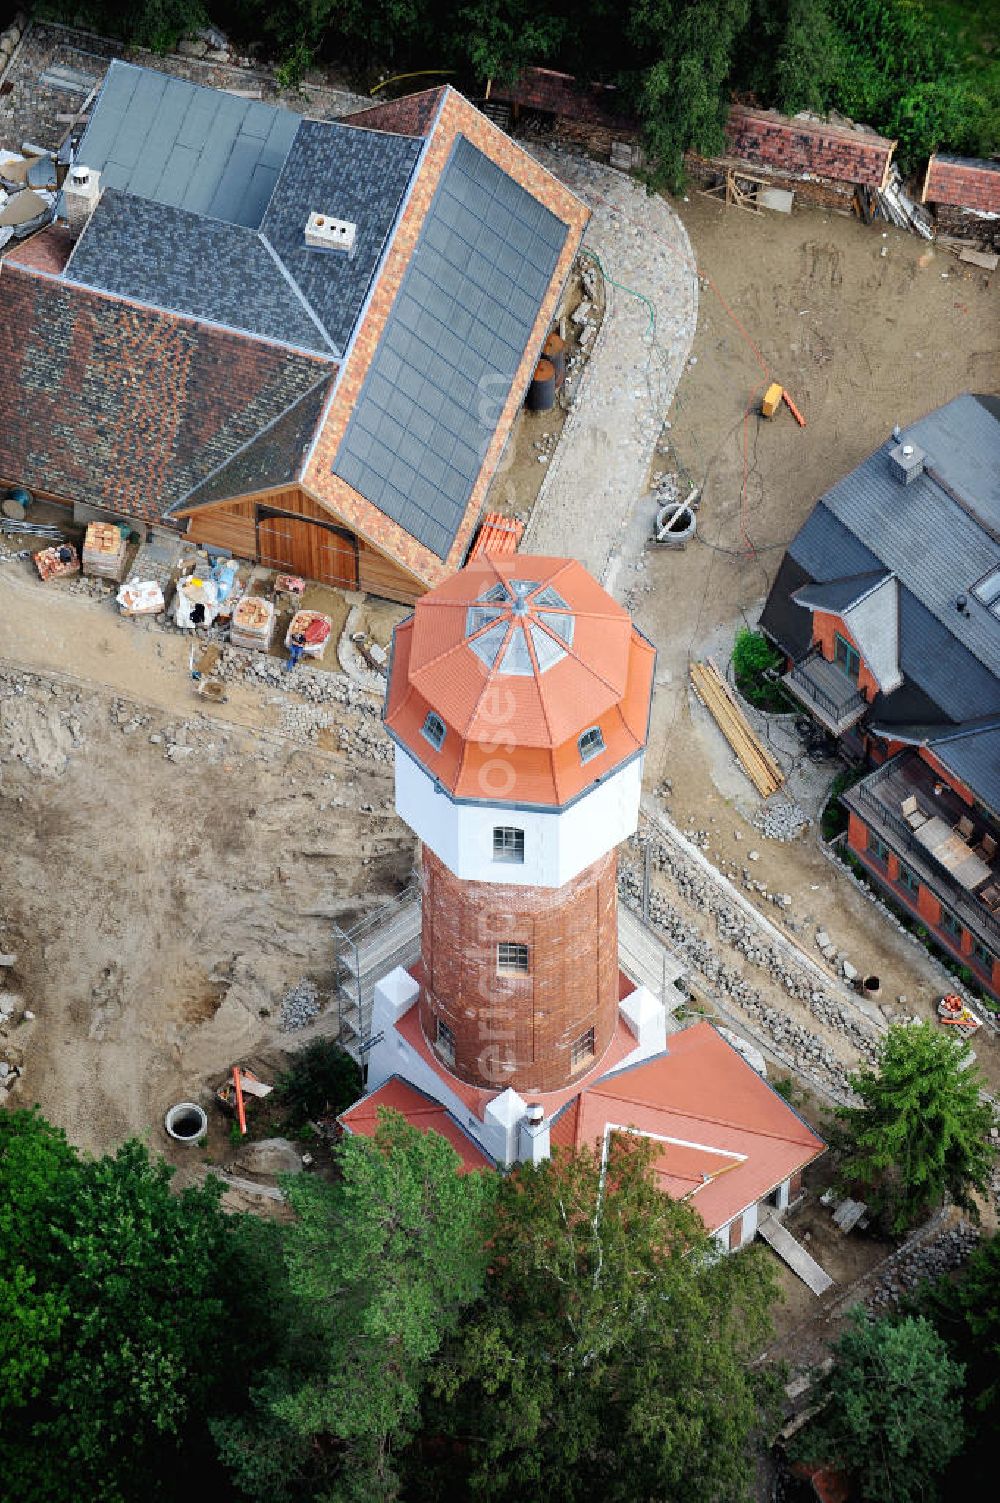 Graal Müritz from above - Blick auf die Restaurationsarbeiten am Wasserturm in Graal-Müritz in Mecklenburg-Vorpommern. Der Wasserturm wurde 1913 gemeinsam mit einem Wasserwerk für Graal und Müritz erbaut und wird mittlerweile von einer Privatfirma zu einem Ferienhaus restauriert.